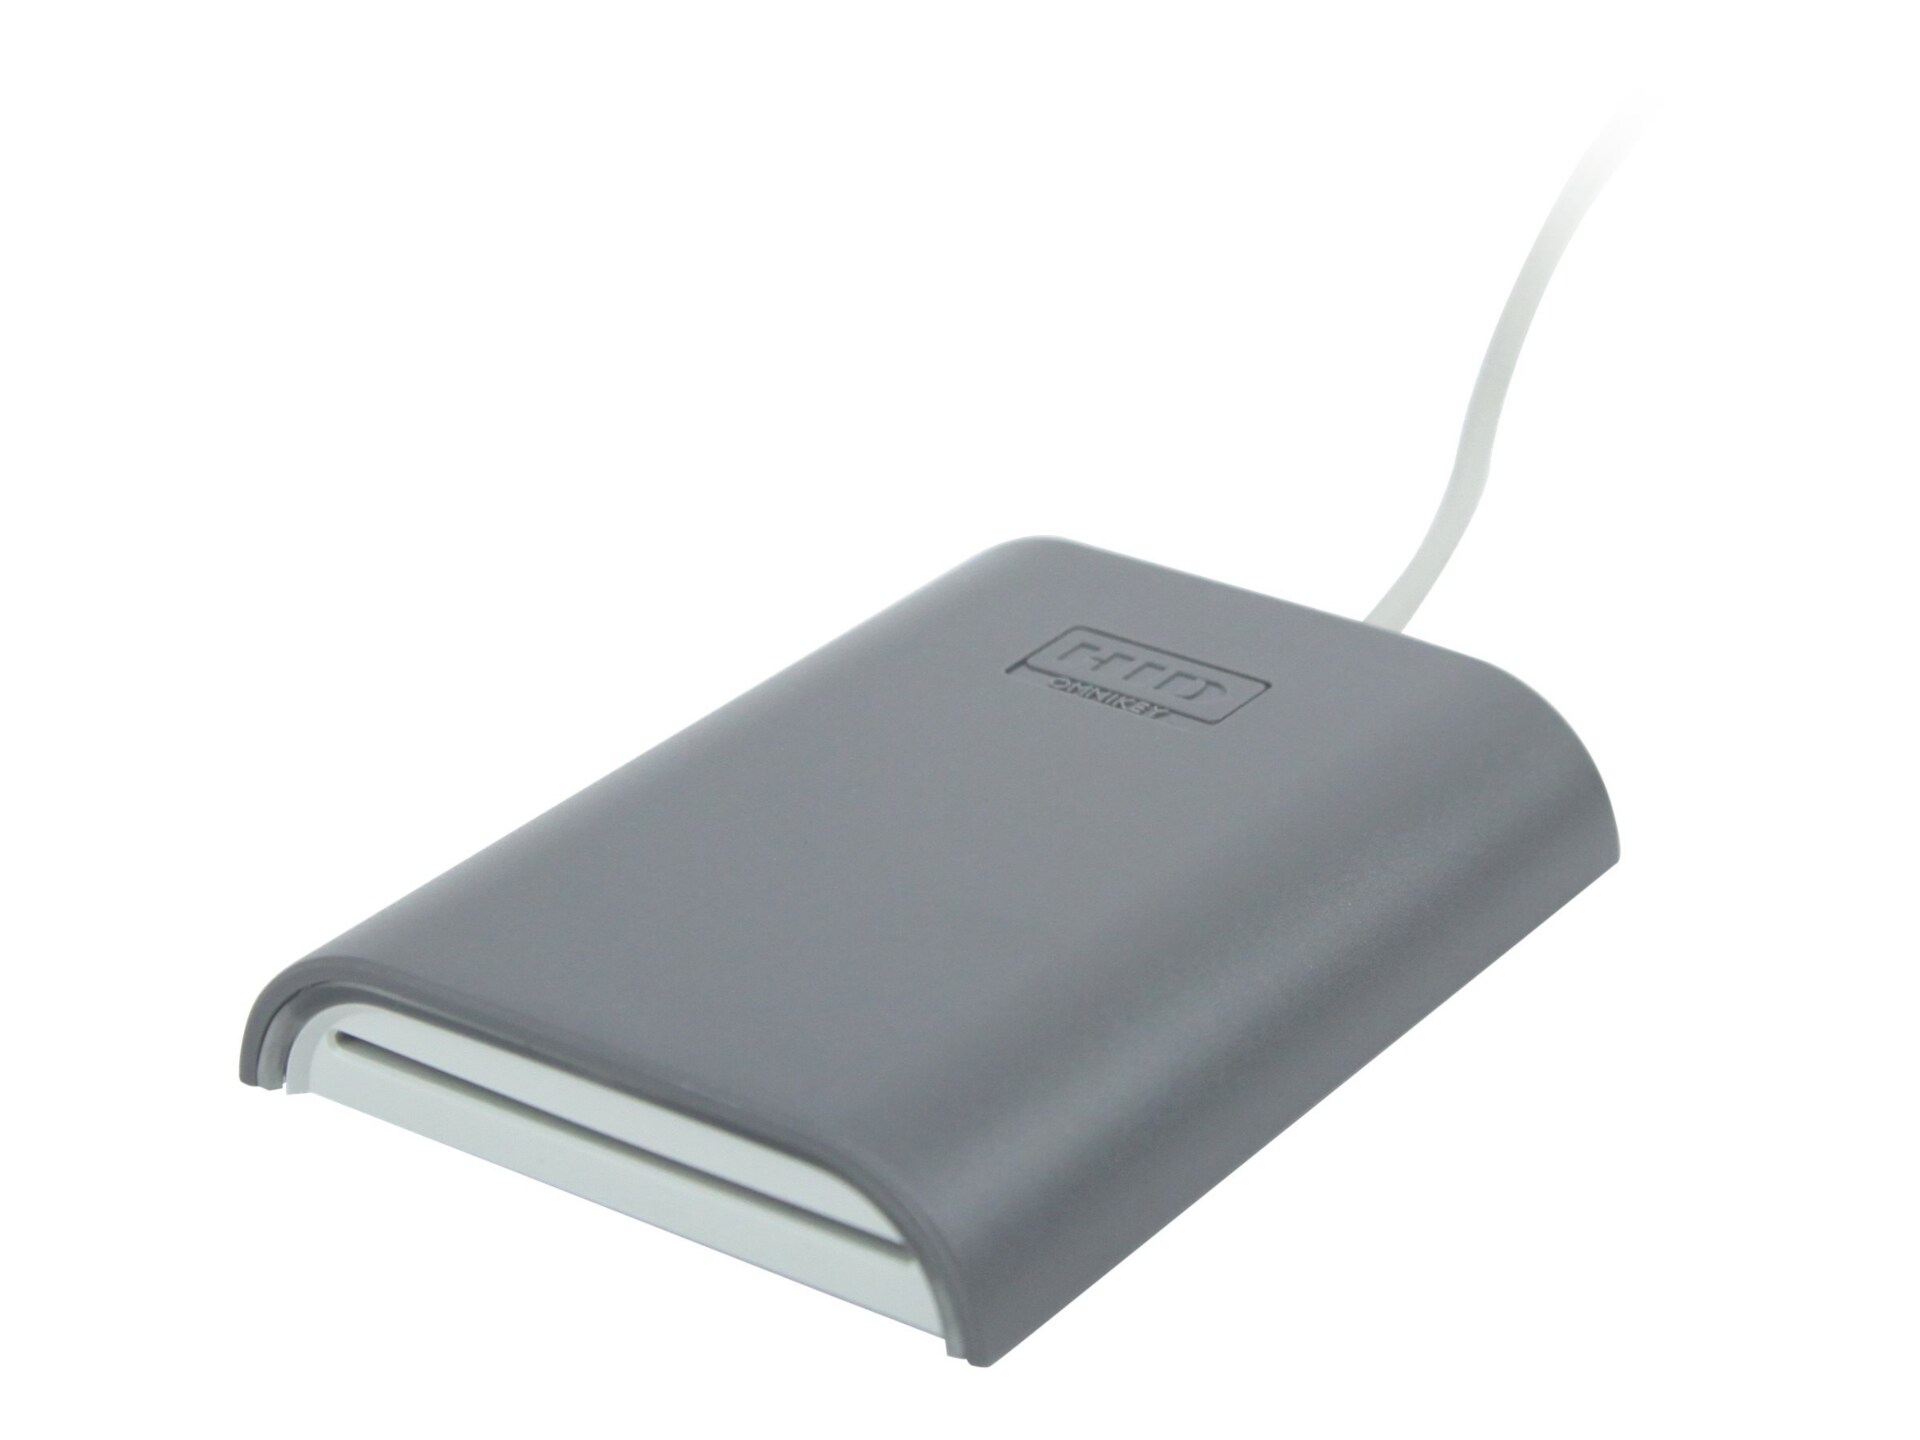 HID OMNIKEY 5421 - SMART card / NFC / RFID reader - USB